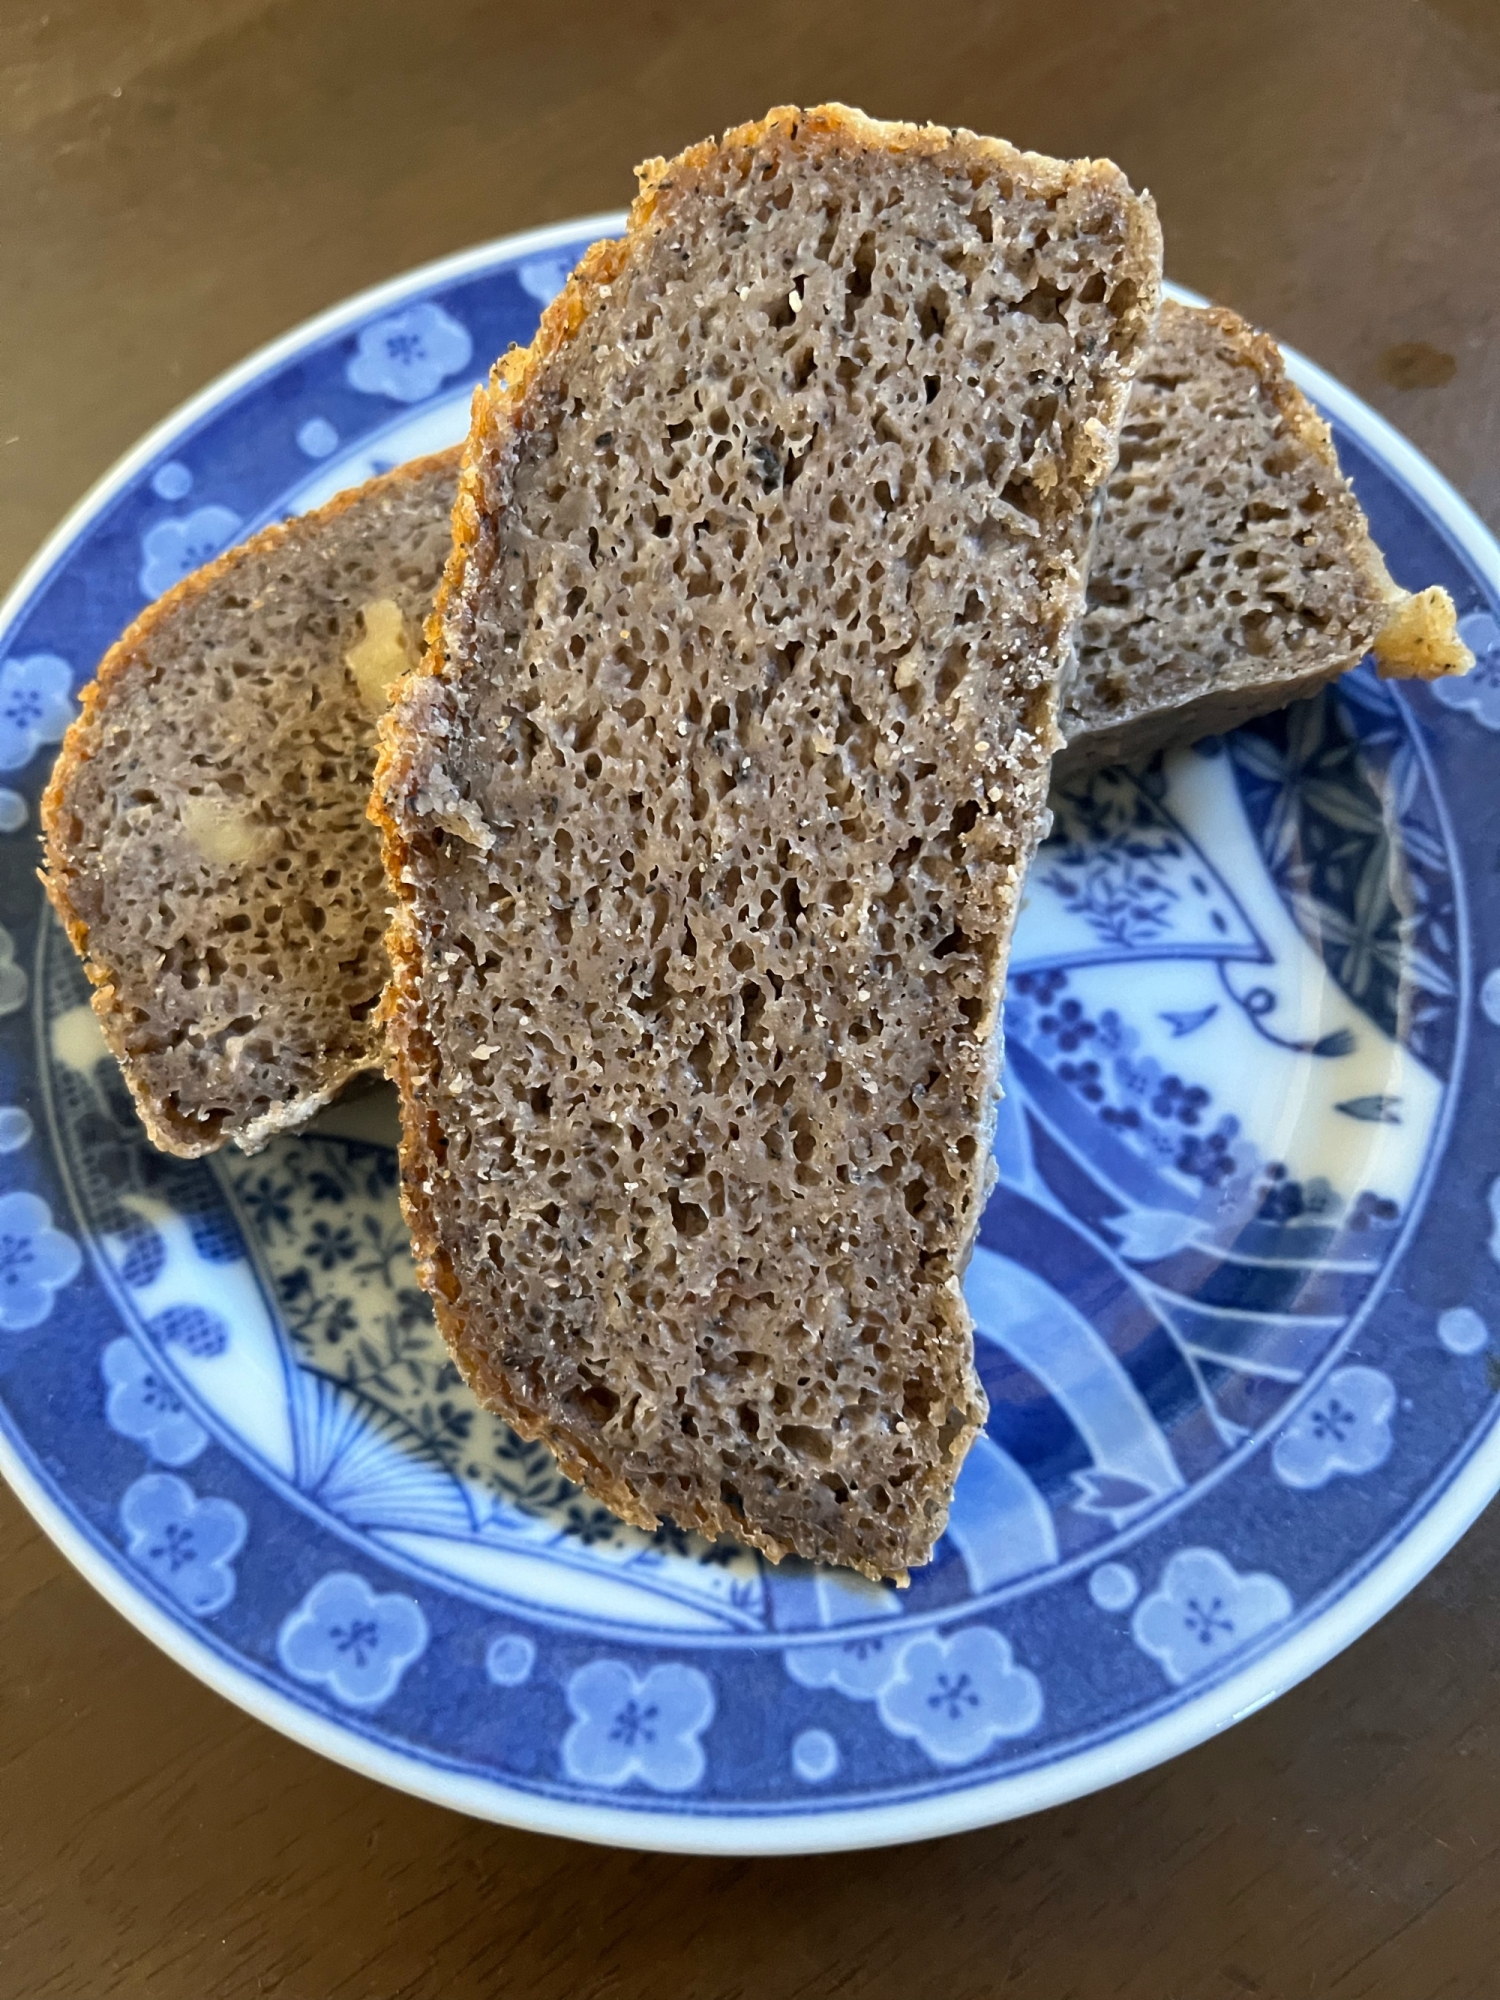 HBでつくる米粉黒ゴマきな粉食パン1.5斤分